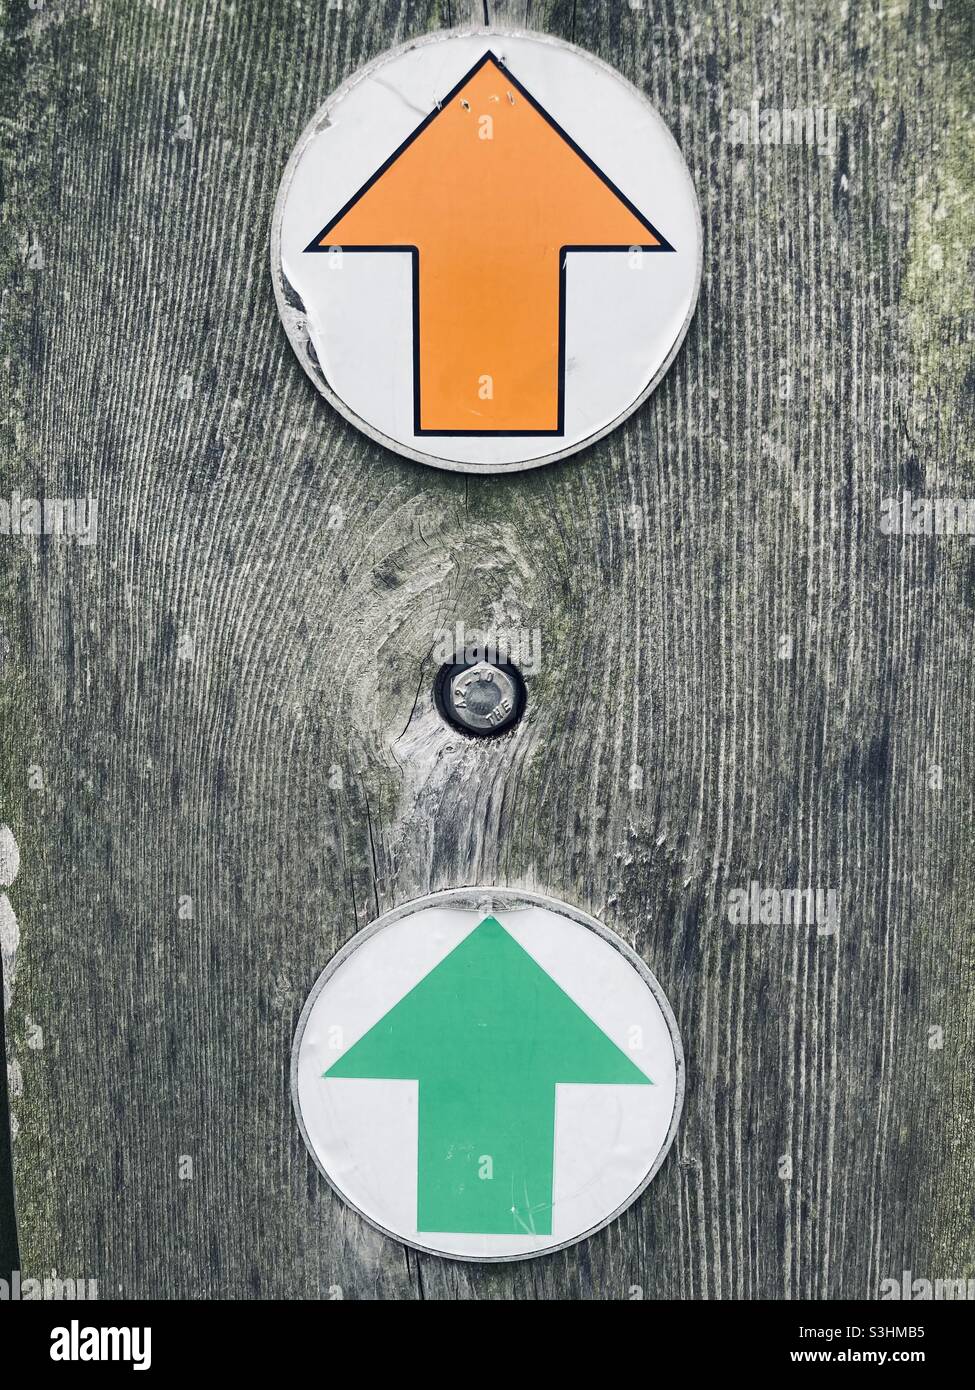 una freccia arancione e una verde sono disposte una sopra l'altra su un palo di legno grigio lavato ed entrambi puntano verso l'alto Foto Stock